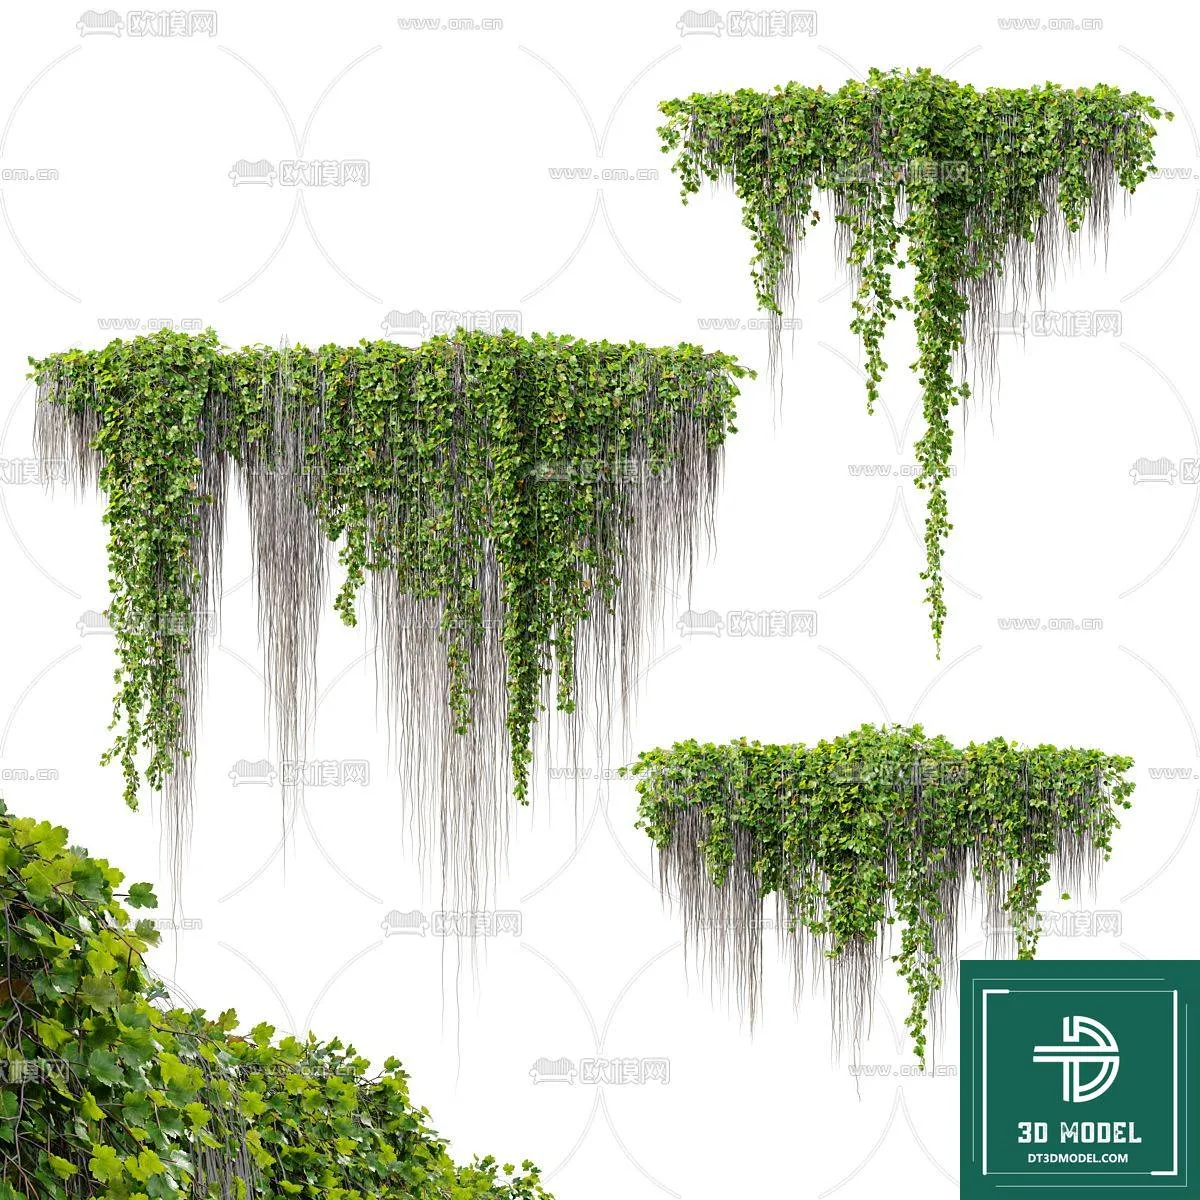 VERTICAL GARDEN – FITOWALL PLANT 3D MODEL – 177